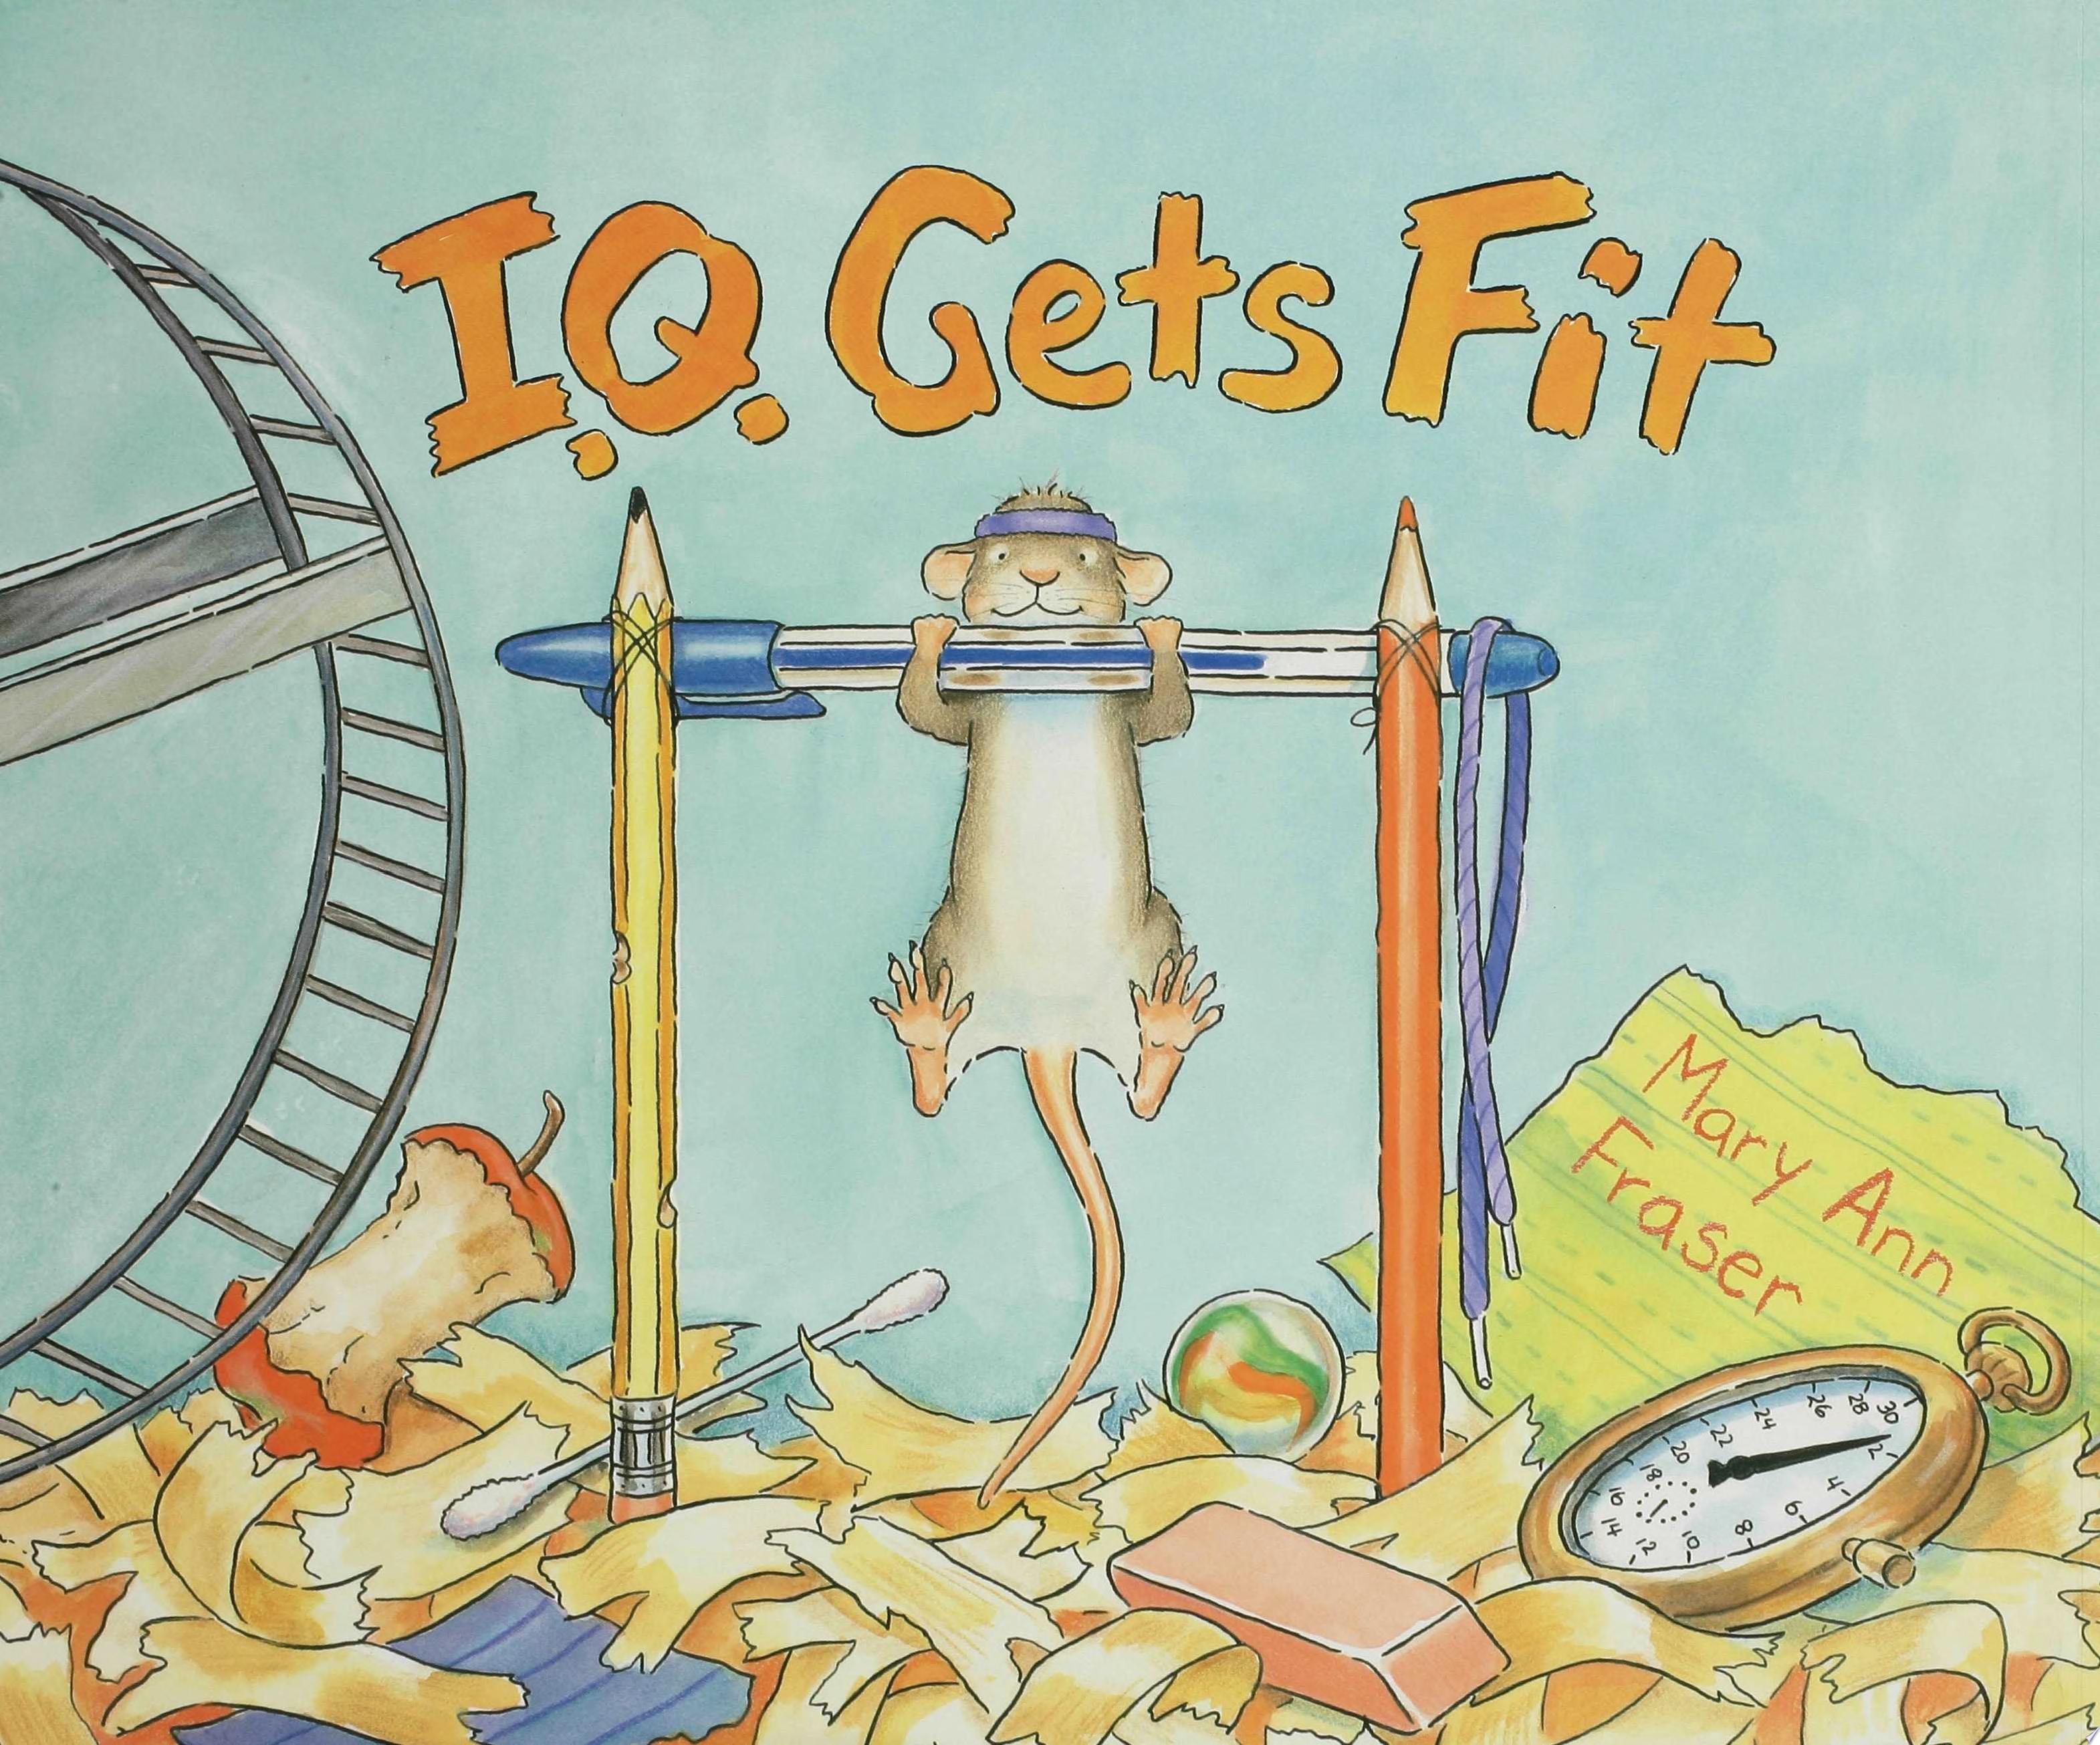 Image for "I.Q. Gets Fit"